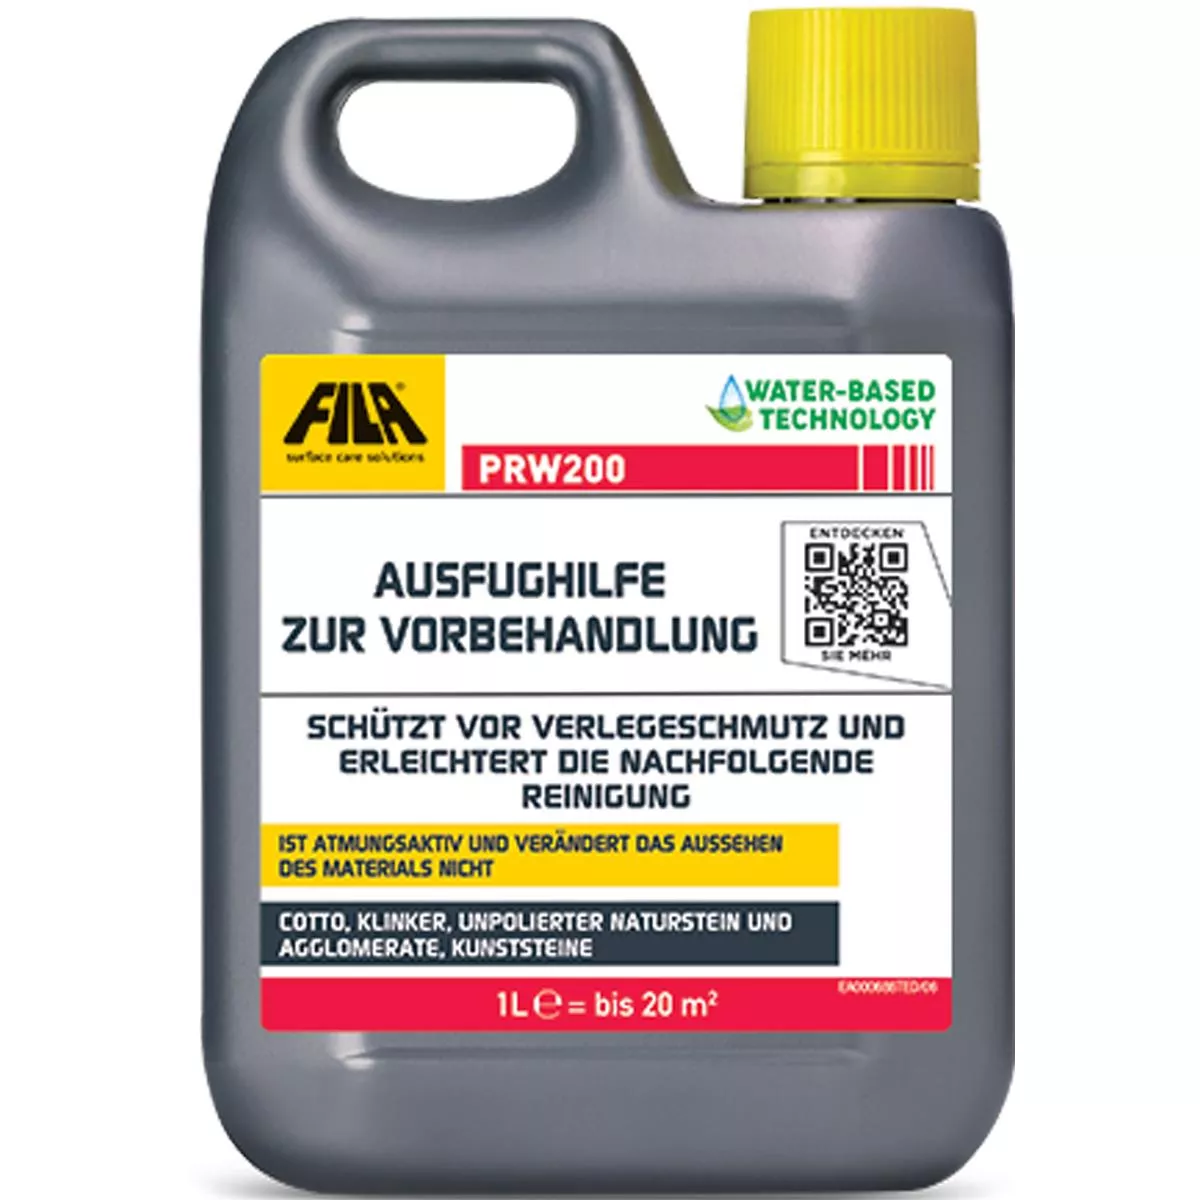 Fila PRW200 Ausfughilfe ochranný prostředek 5 litrů